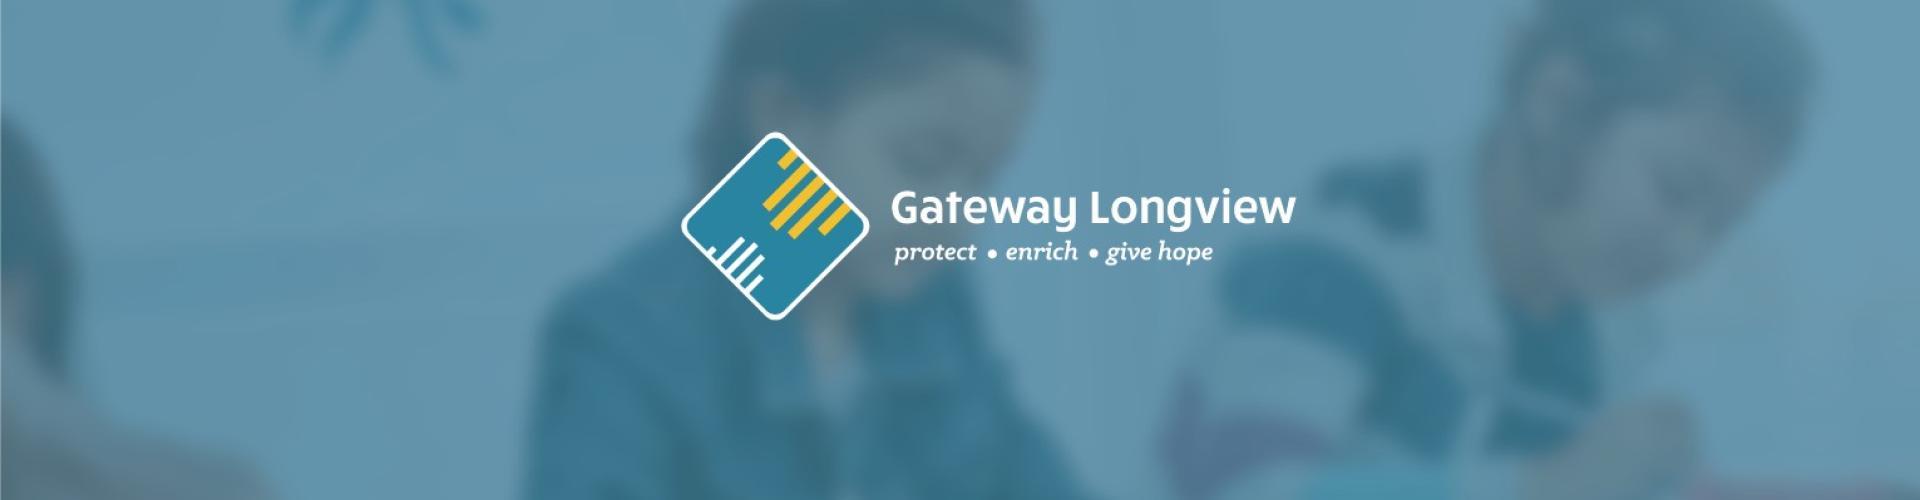 Gateway Longview cover